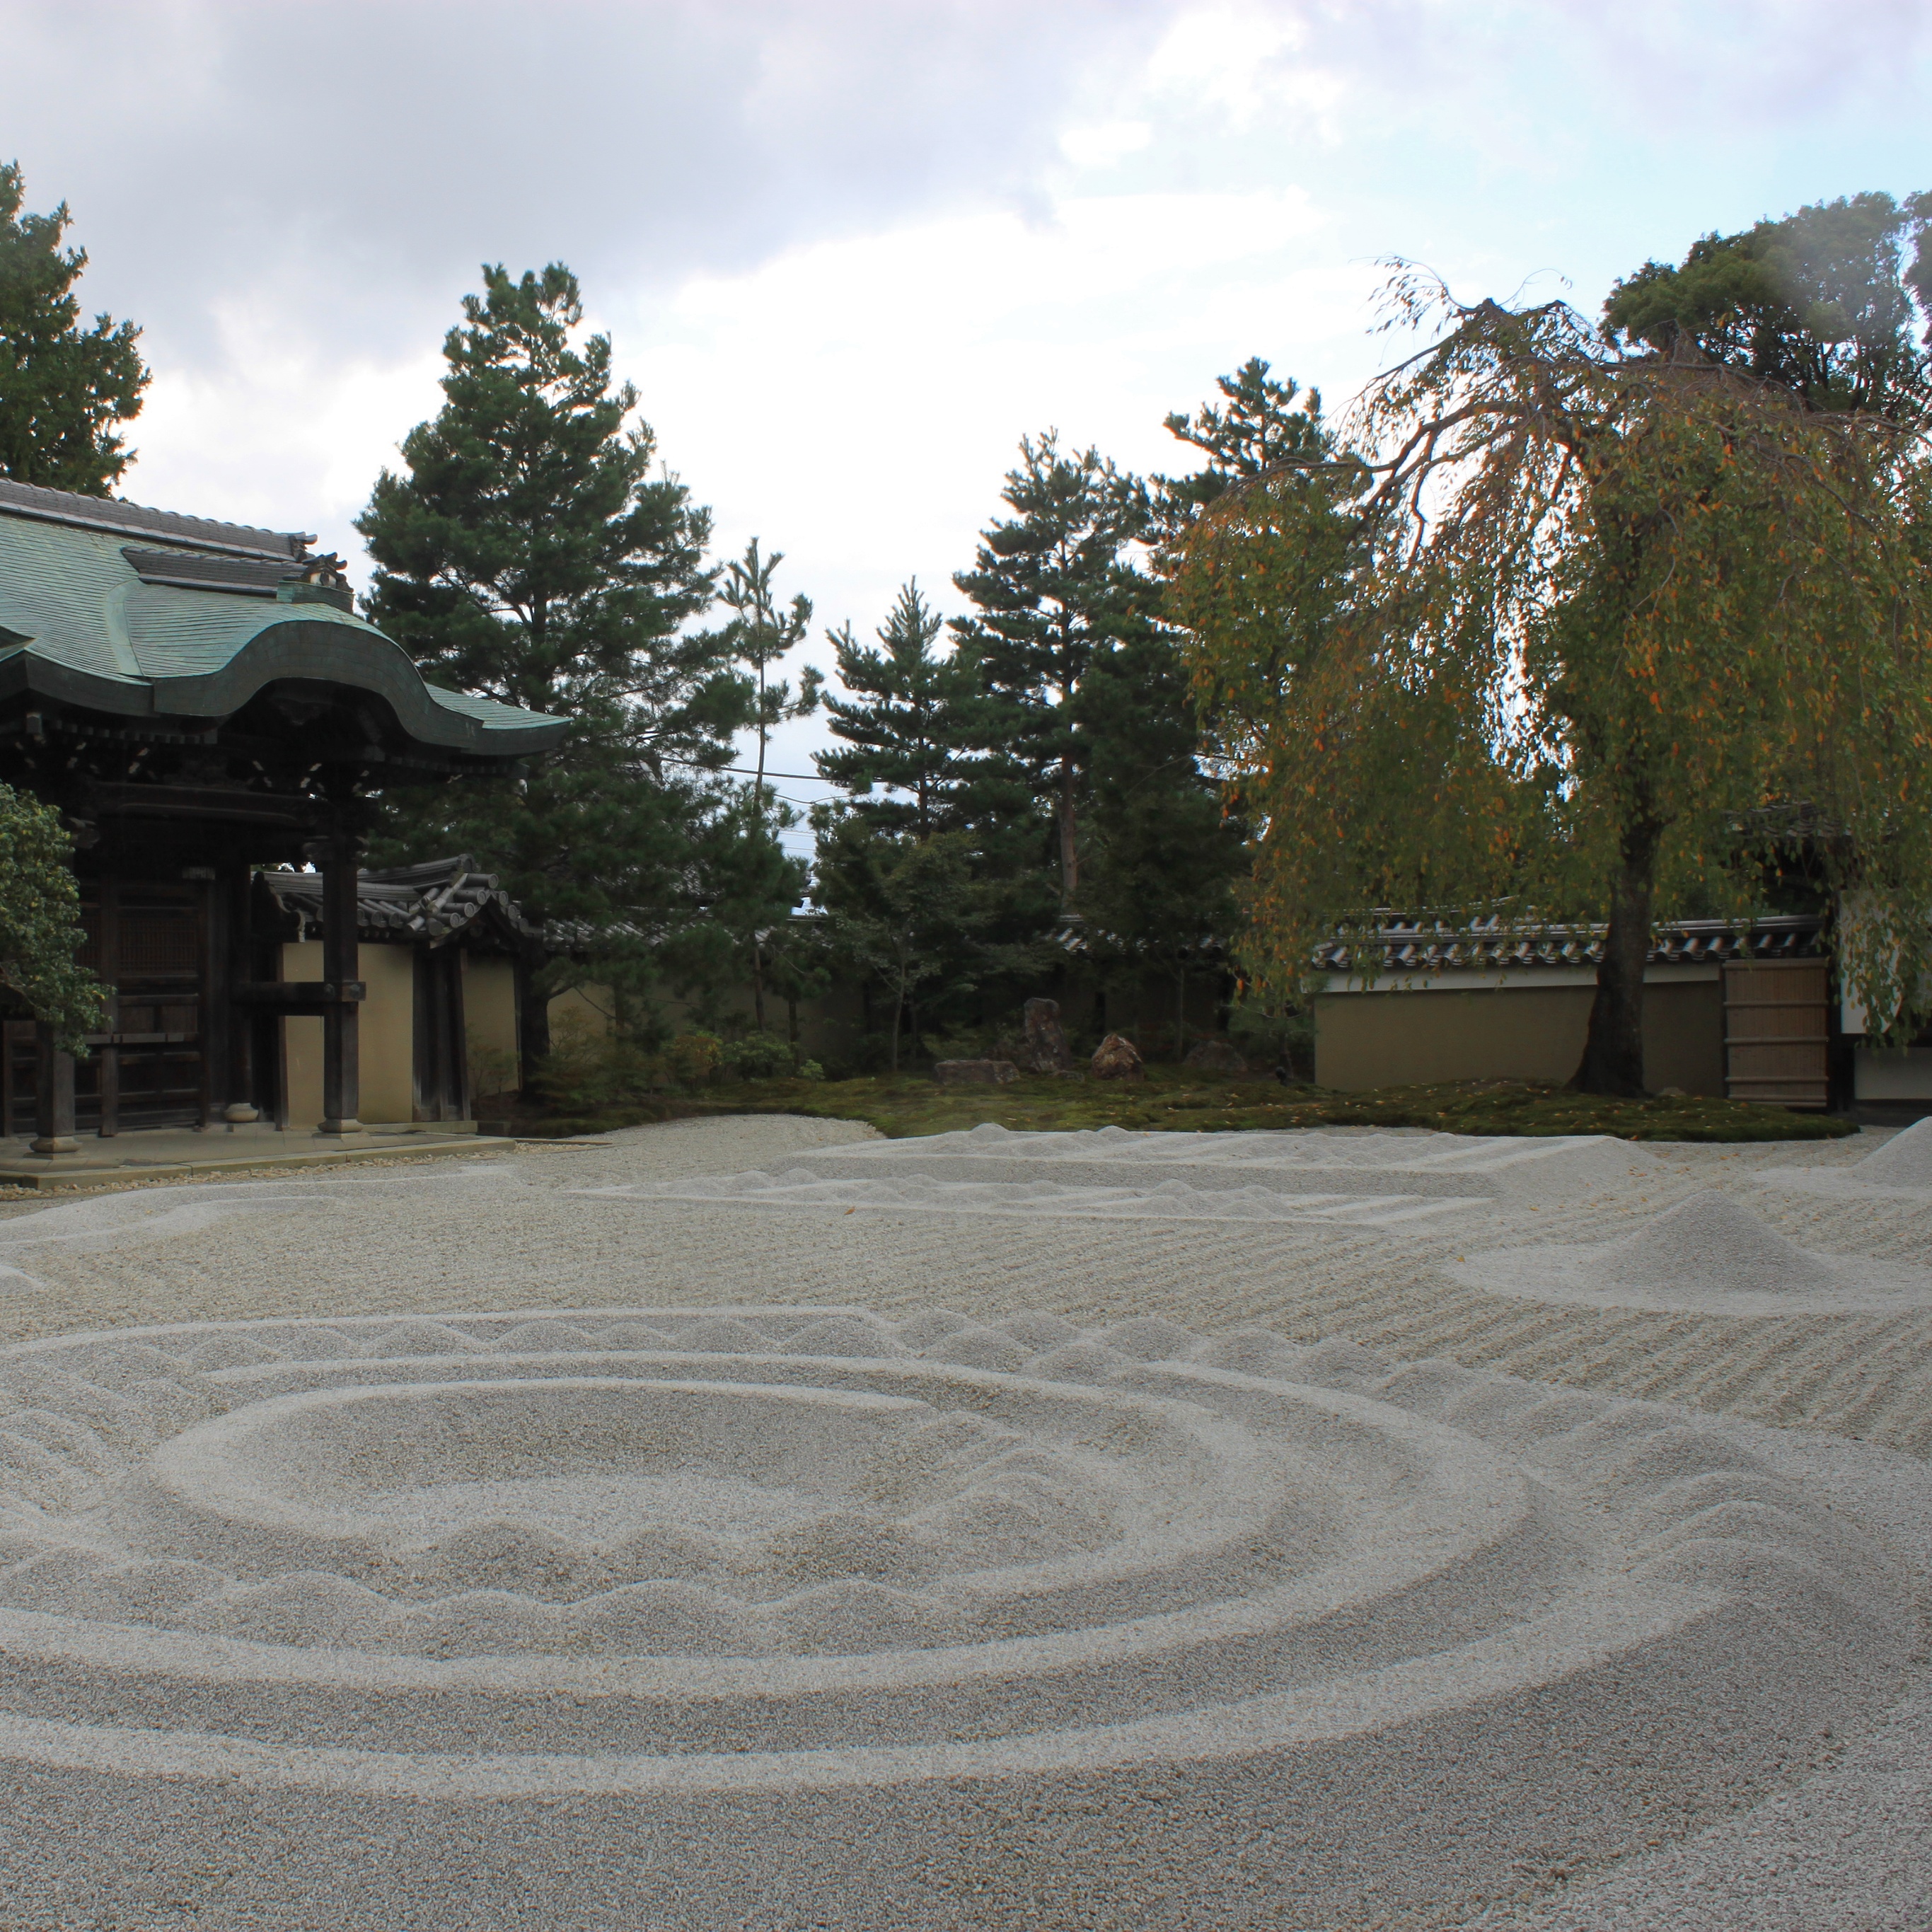 Zen garden at Kodai-ji